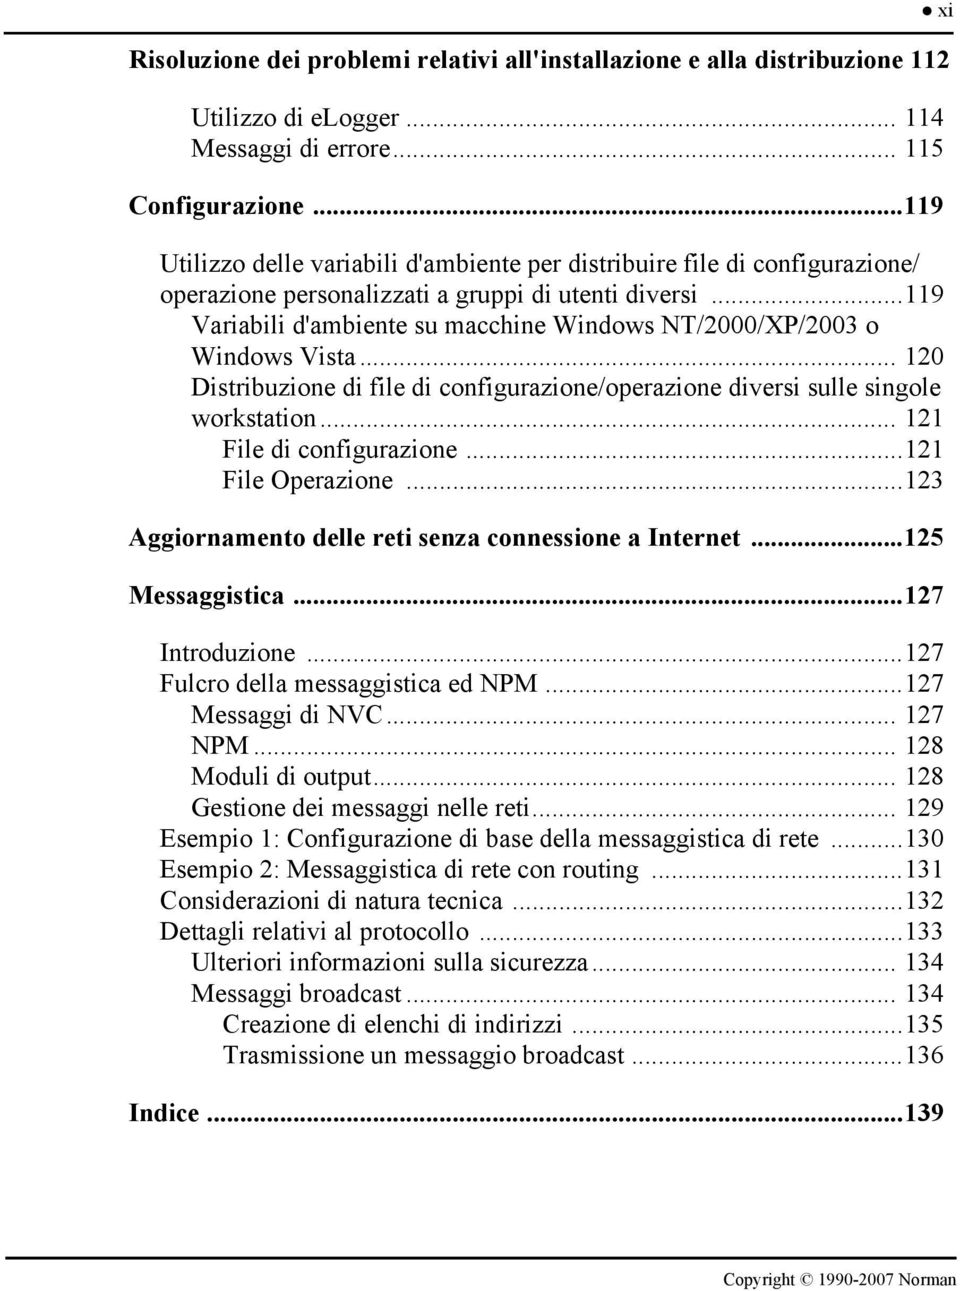 ..119 Variabili d'ambiente su macchine Windows NT/2000/XP/2003 o Windows Vista... 120 Distribuzione di file di configurazione/operazione diversi sulle singole workstation... 121 File di configurazione.